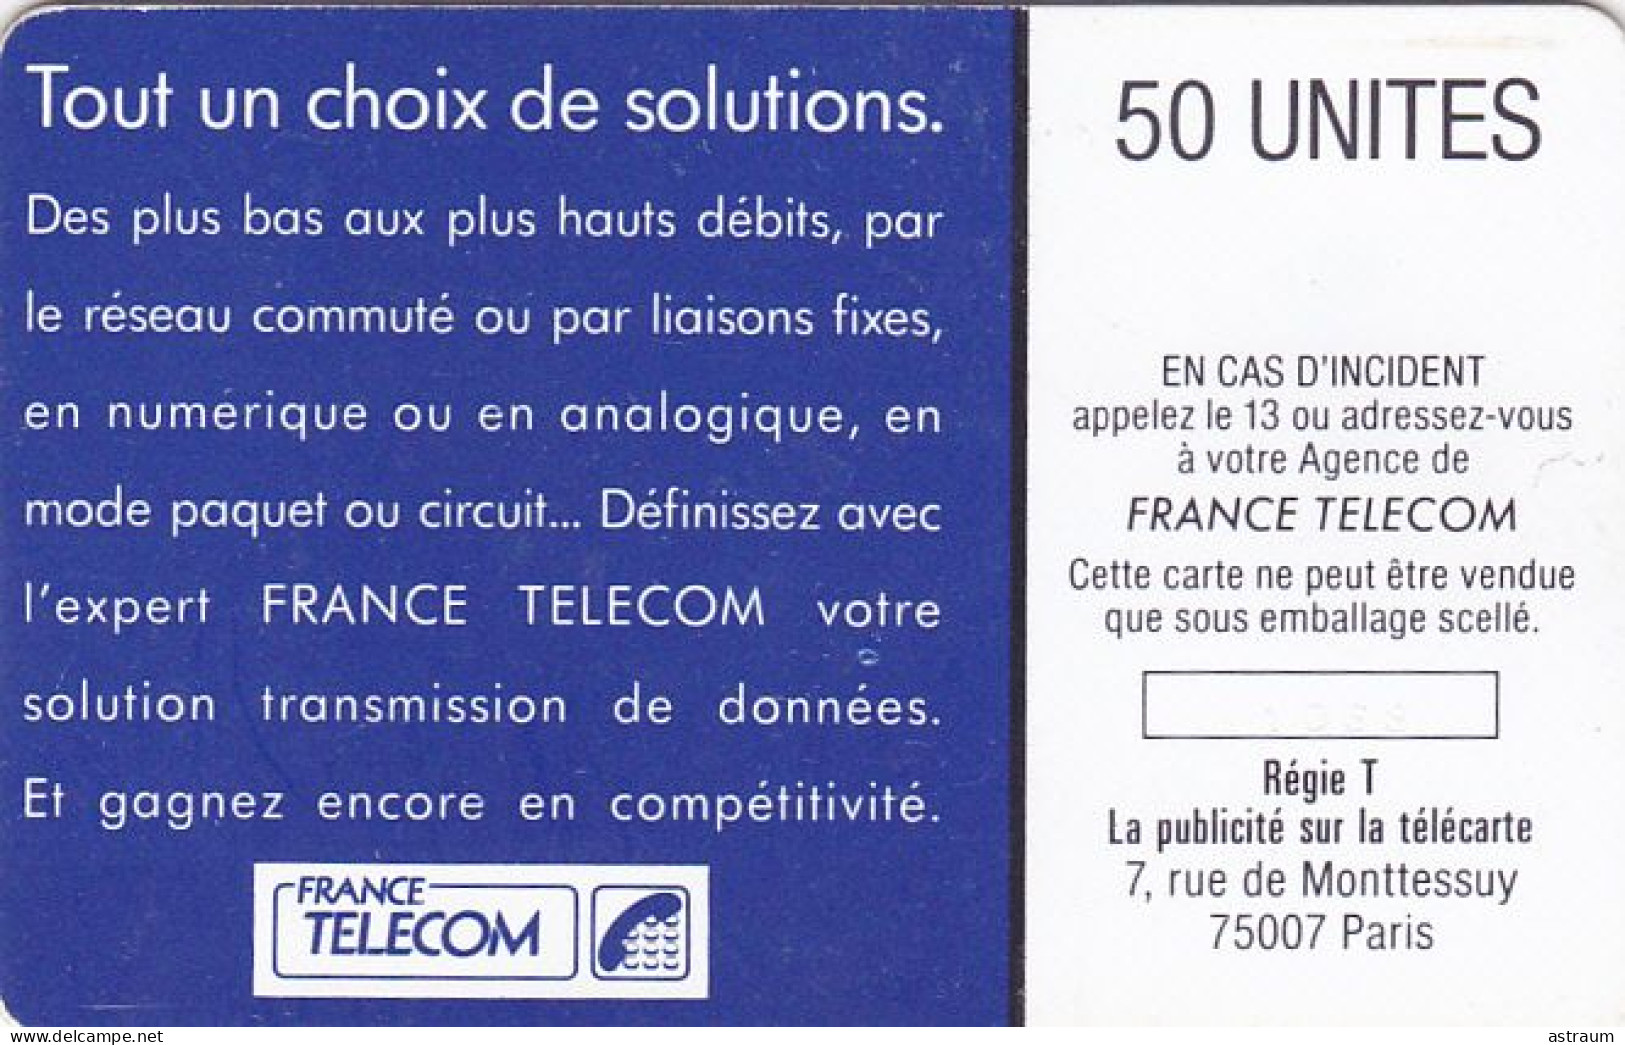 Telecarte Interne C33 Luxe - Transmissions De Données - 50 U - S02 - 1988 - 3558 Ex - Internes